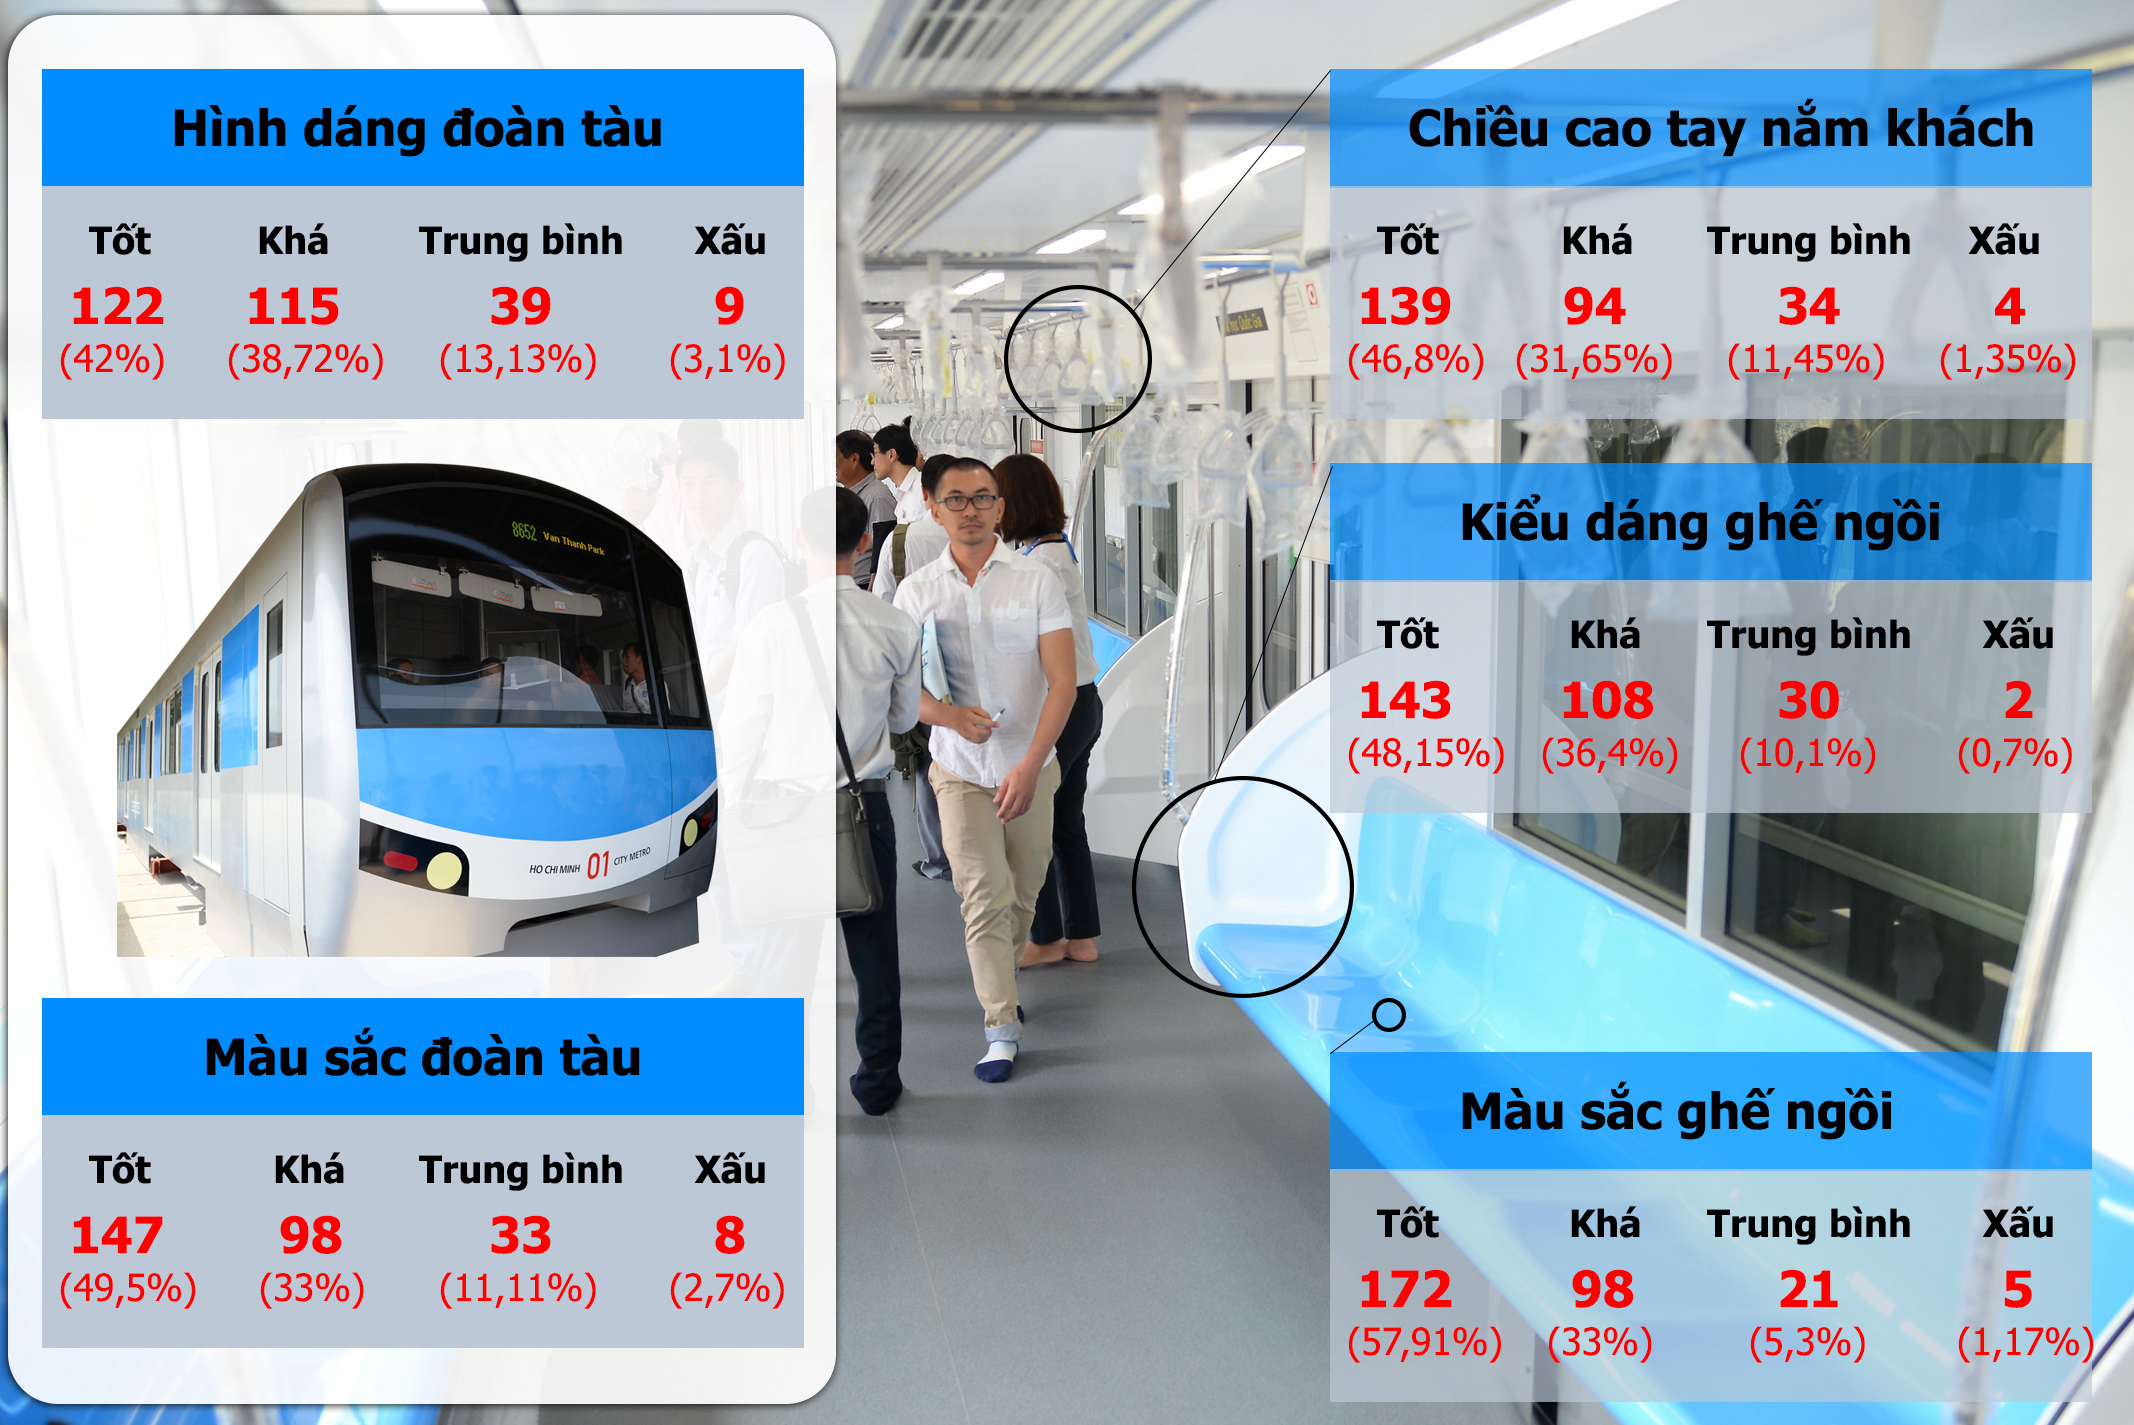 Thống kê góp ý cho tàu metro từ 297 phiếu thăm dò được phát ra - Ảnh: Hữu Khoa - Đồ họa: Vĩ Cường